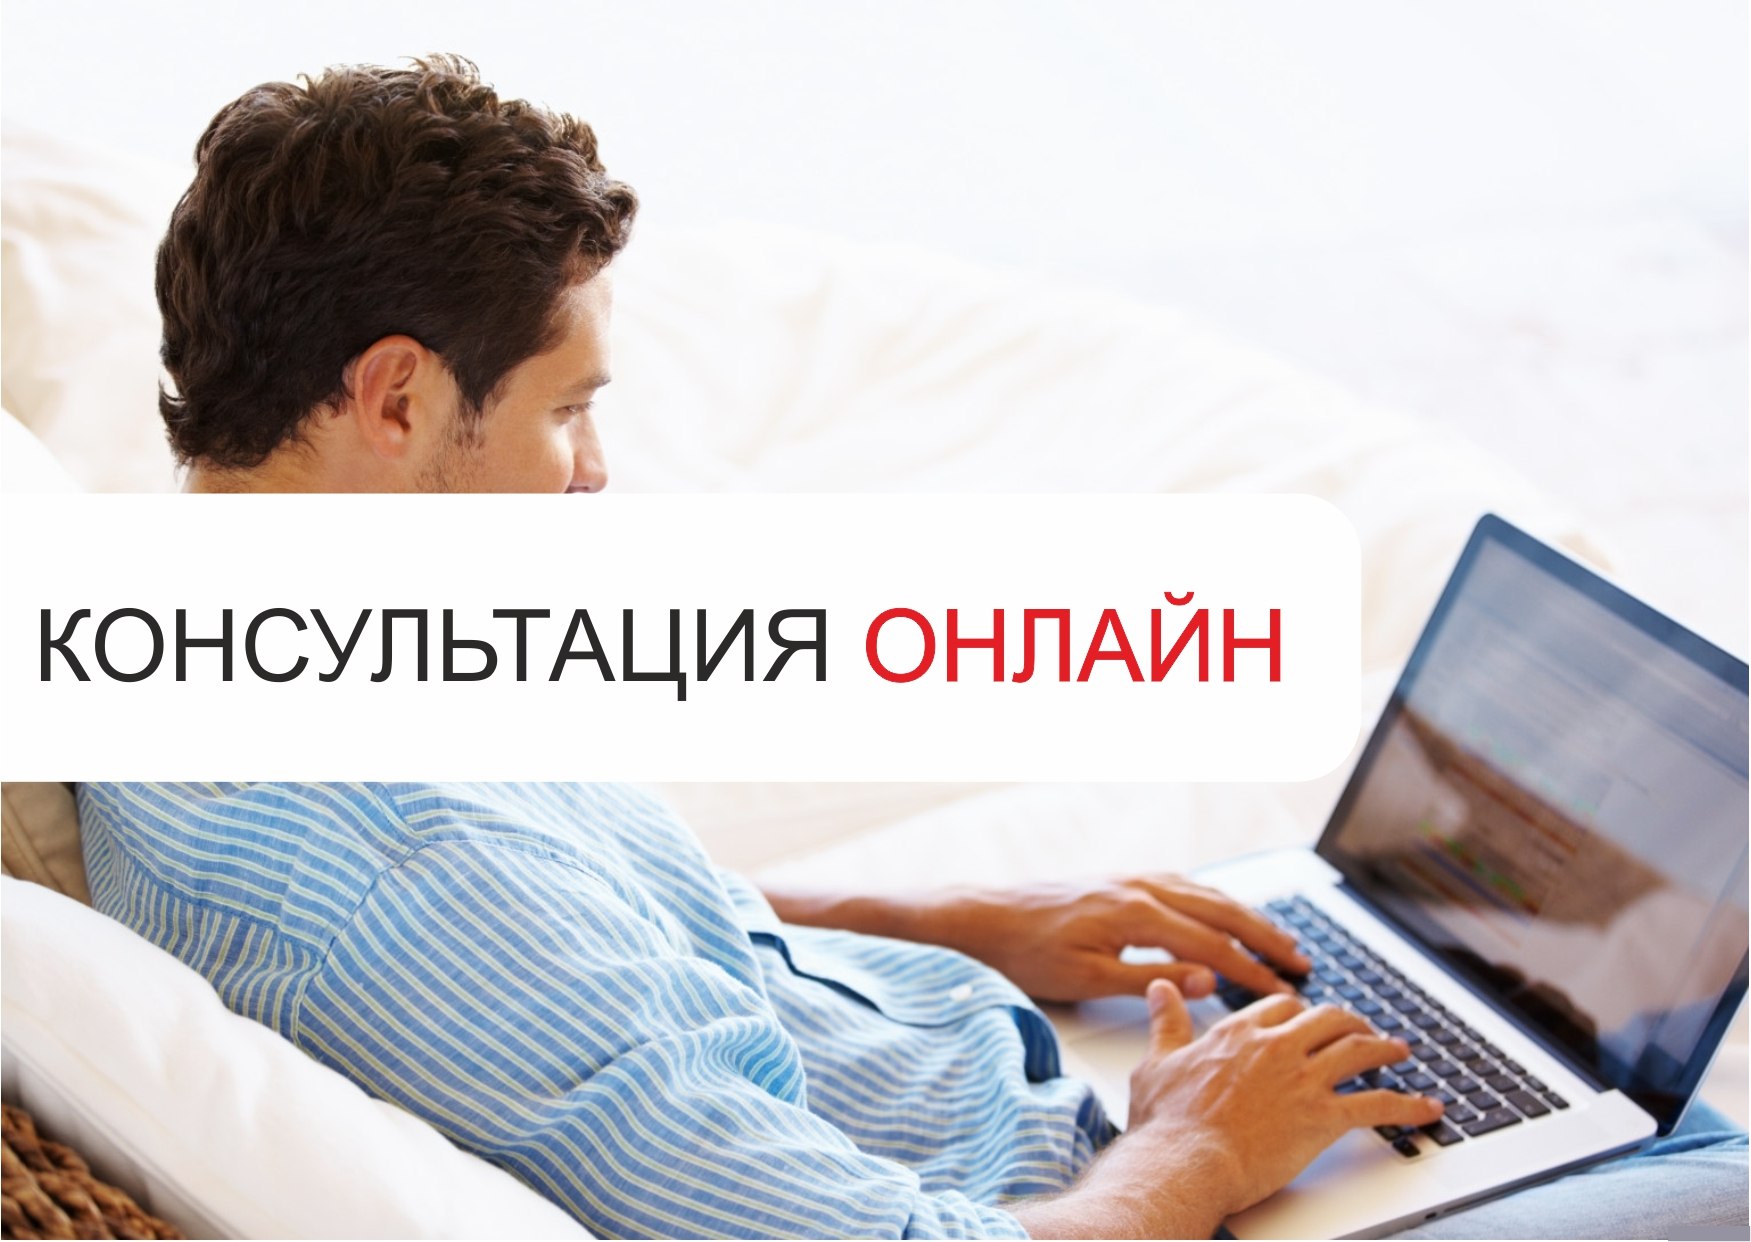 Росреестр проведёт онлайн-консультации в социальных сетях ВКонтакте и Facebook (Изображение с сайта peterburg2.ru)